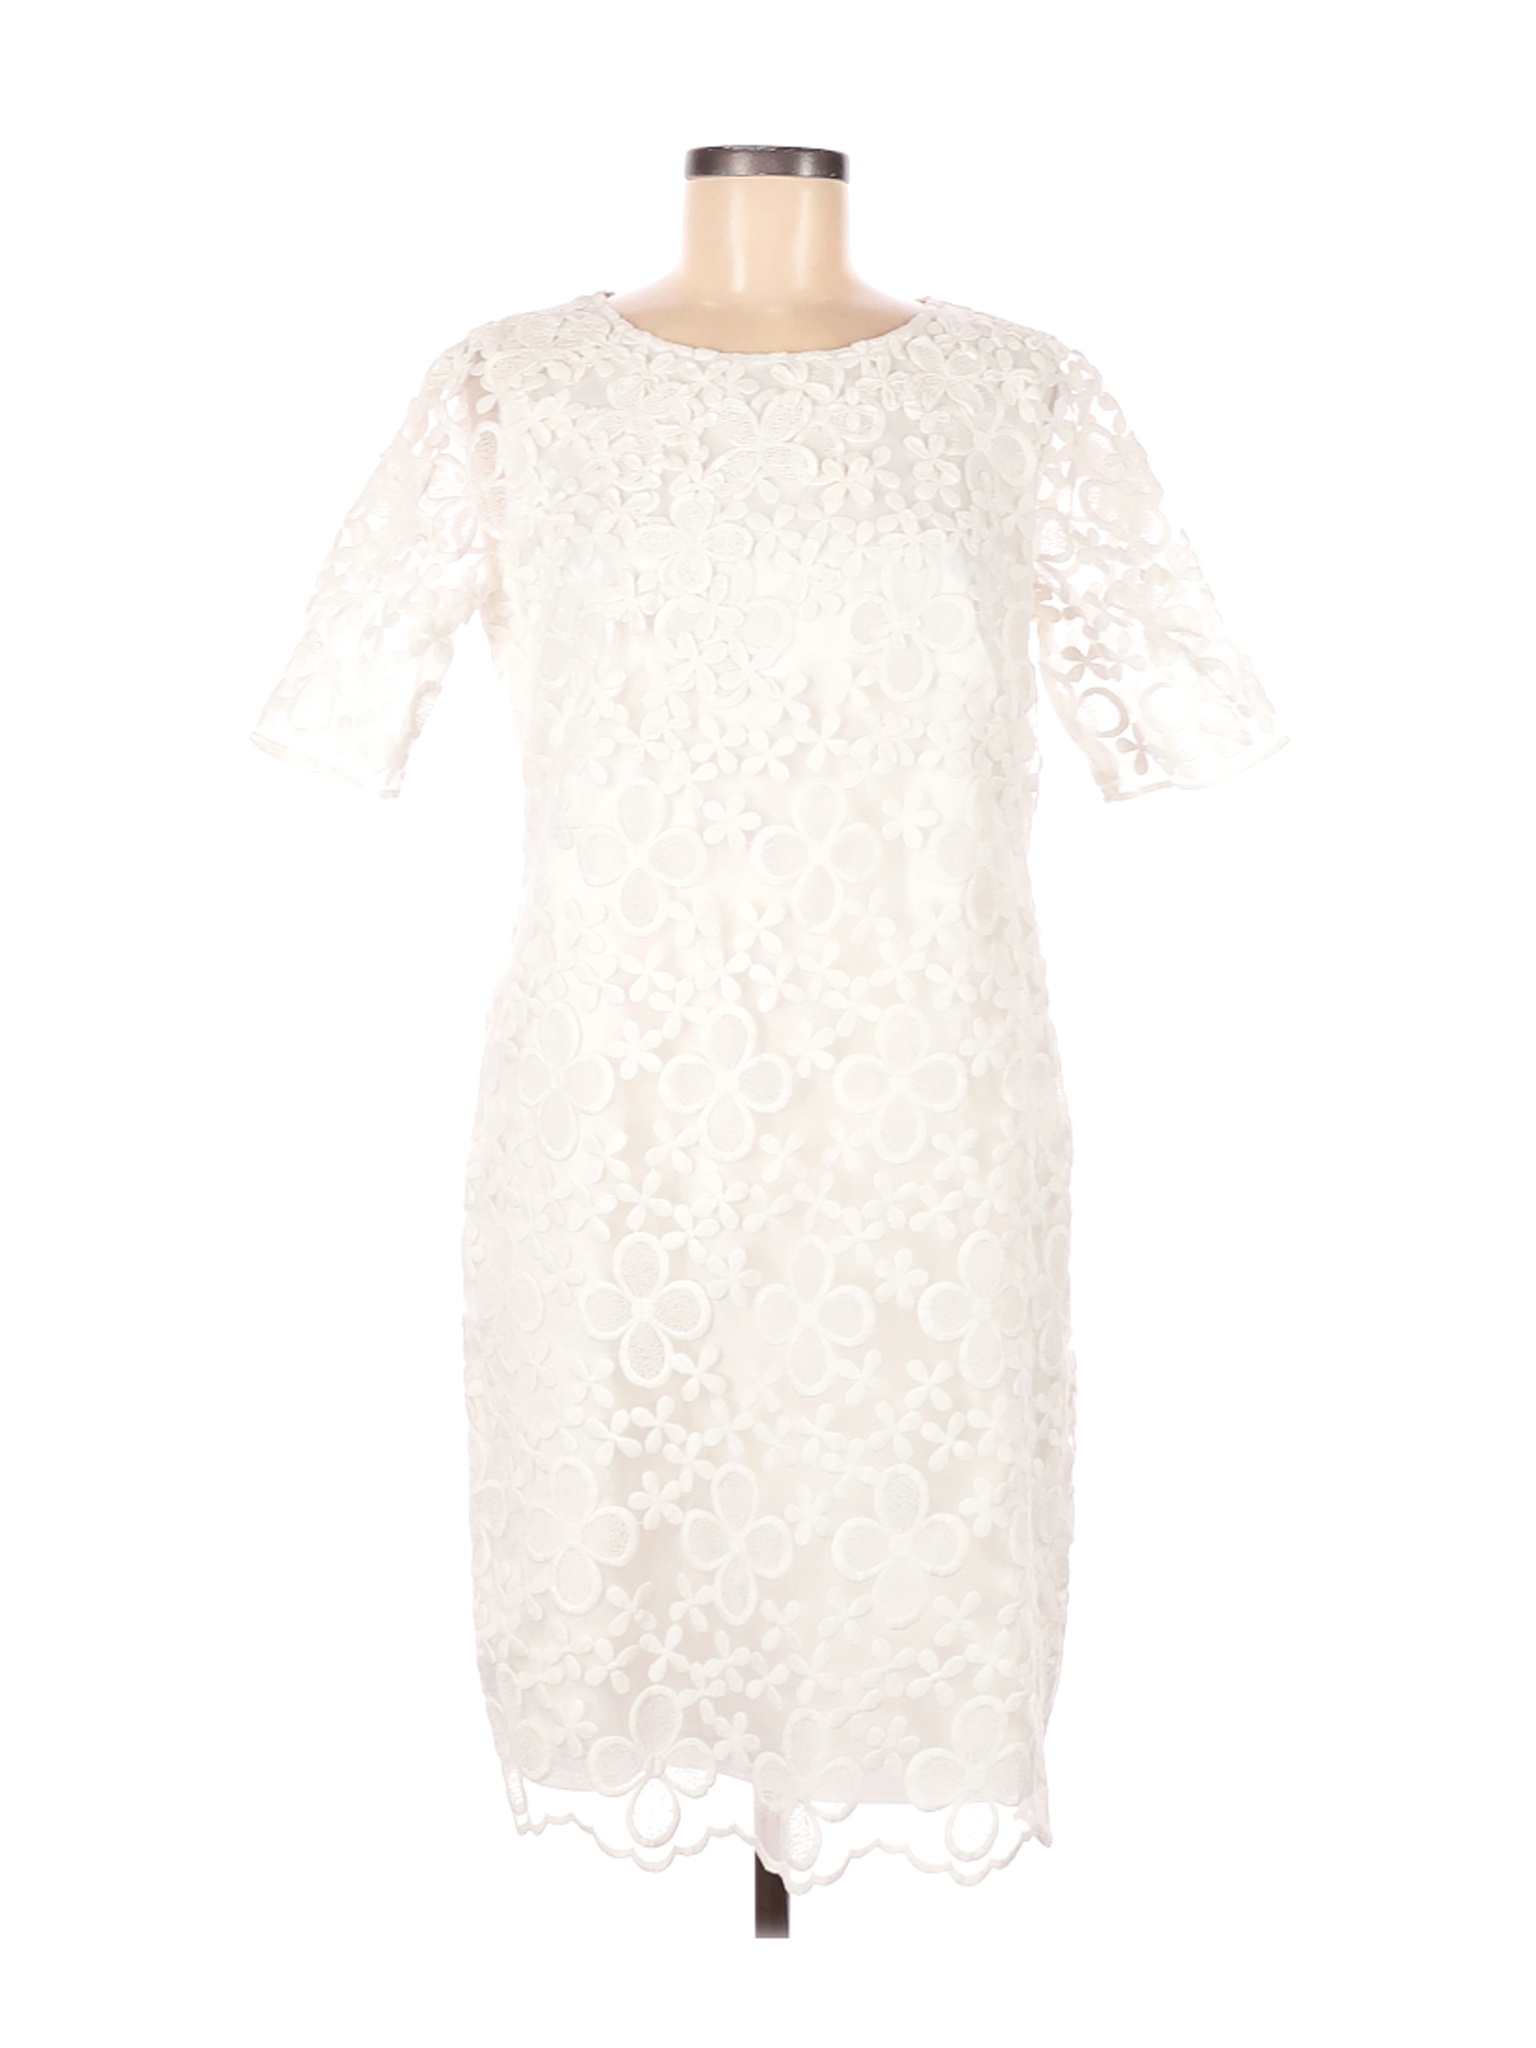 Ann Taylor Women White Cocktail Dress 8 | eBay